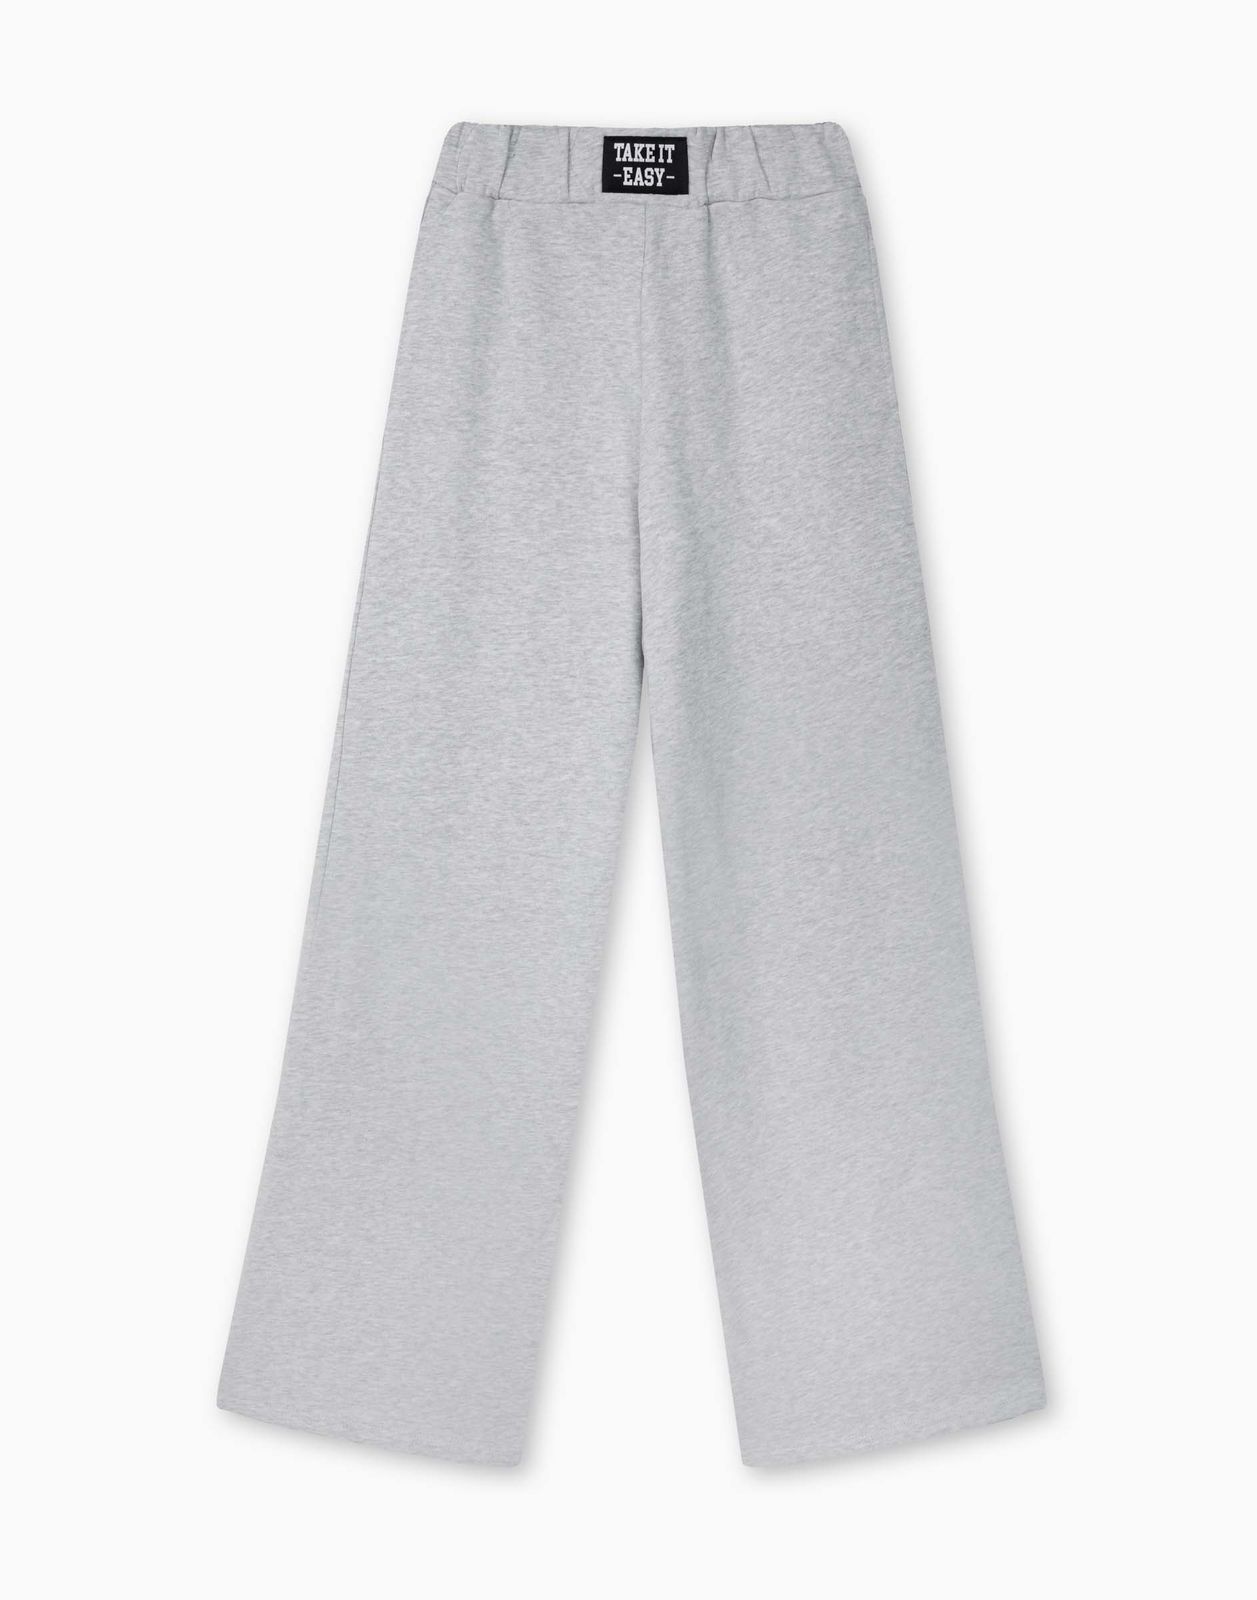 Спортивные брюки для девочки Gloria Jeans GAC022212 светло-серый меланж 13-14л/164